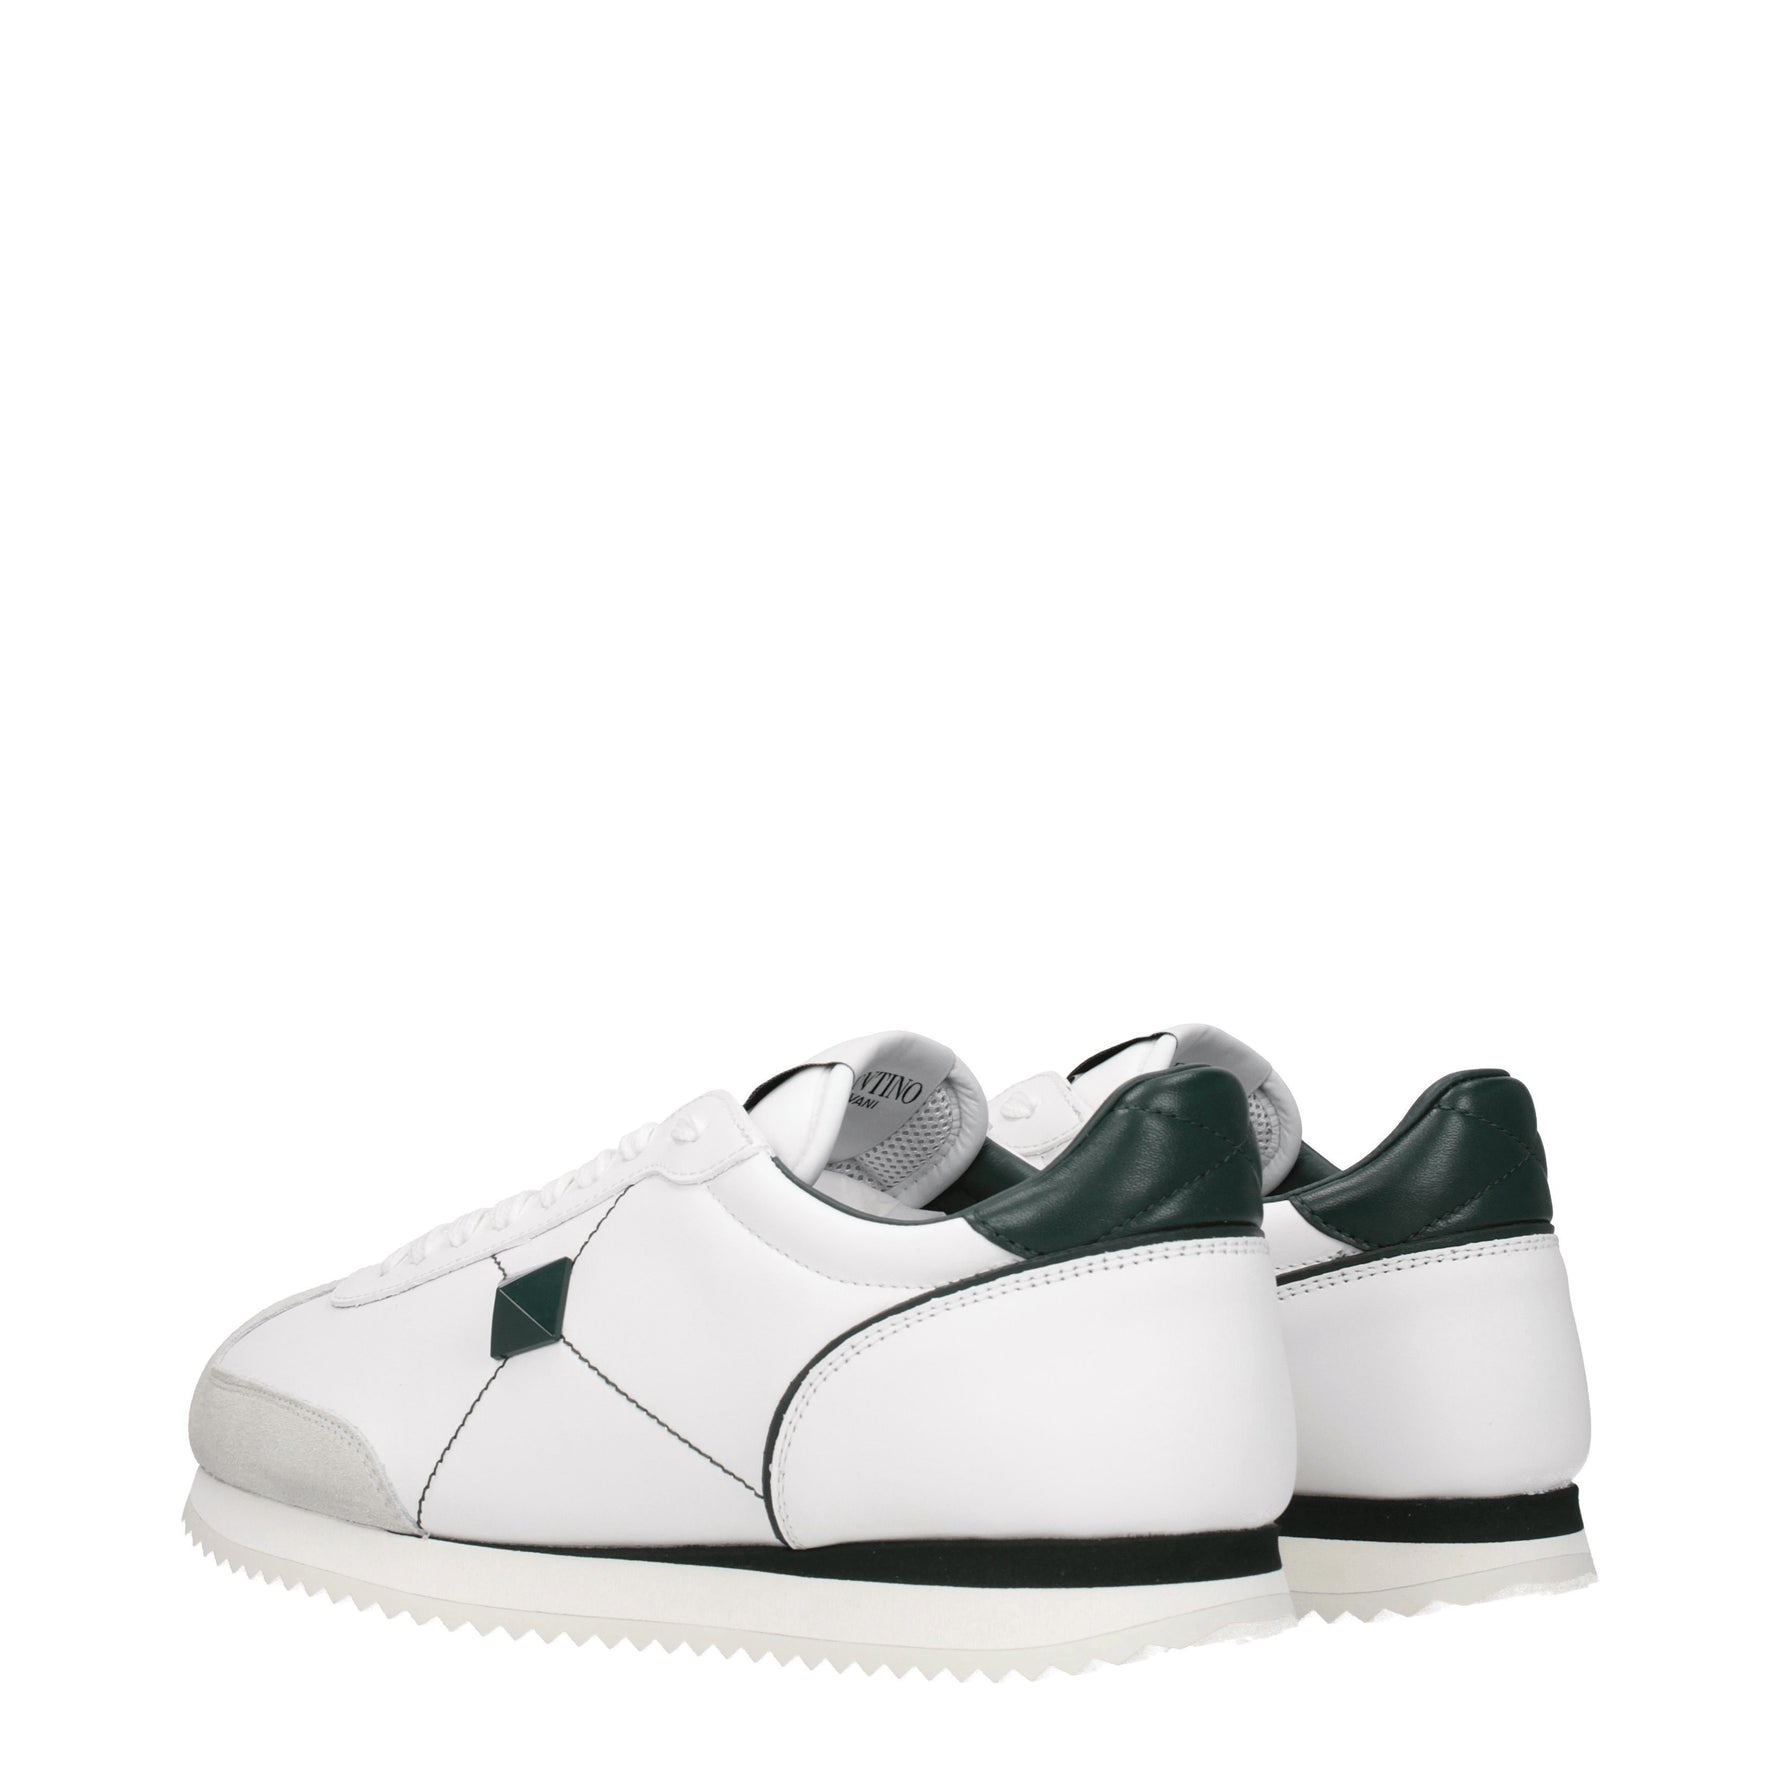 Valentino Garavani Sneakers Uomo Pelle Bianco Verde Scuro